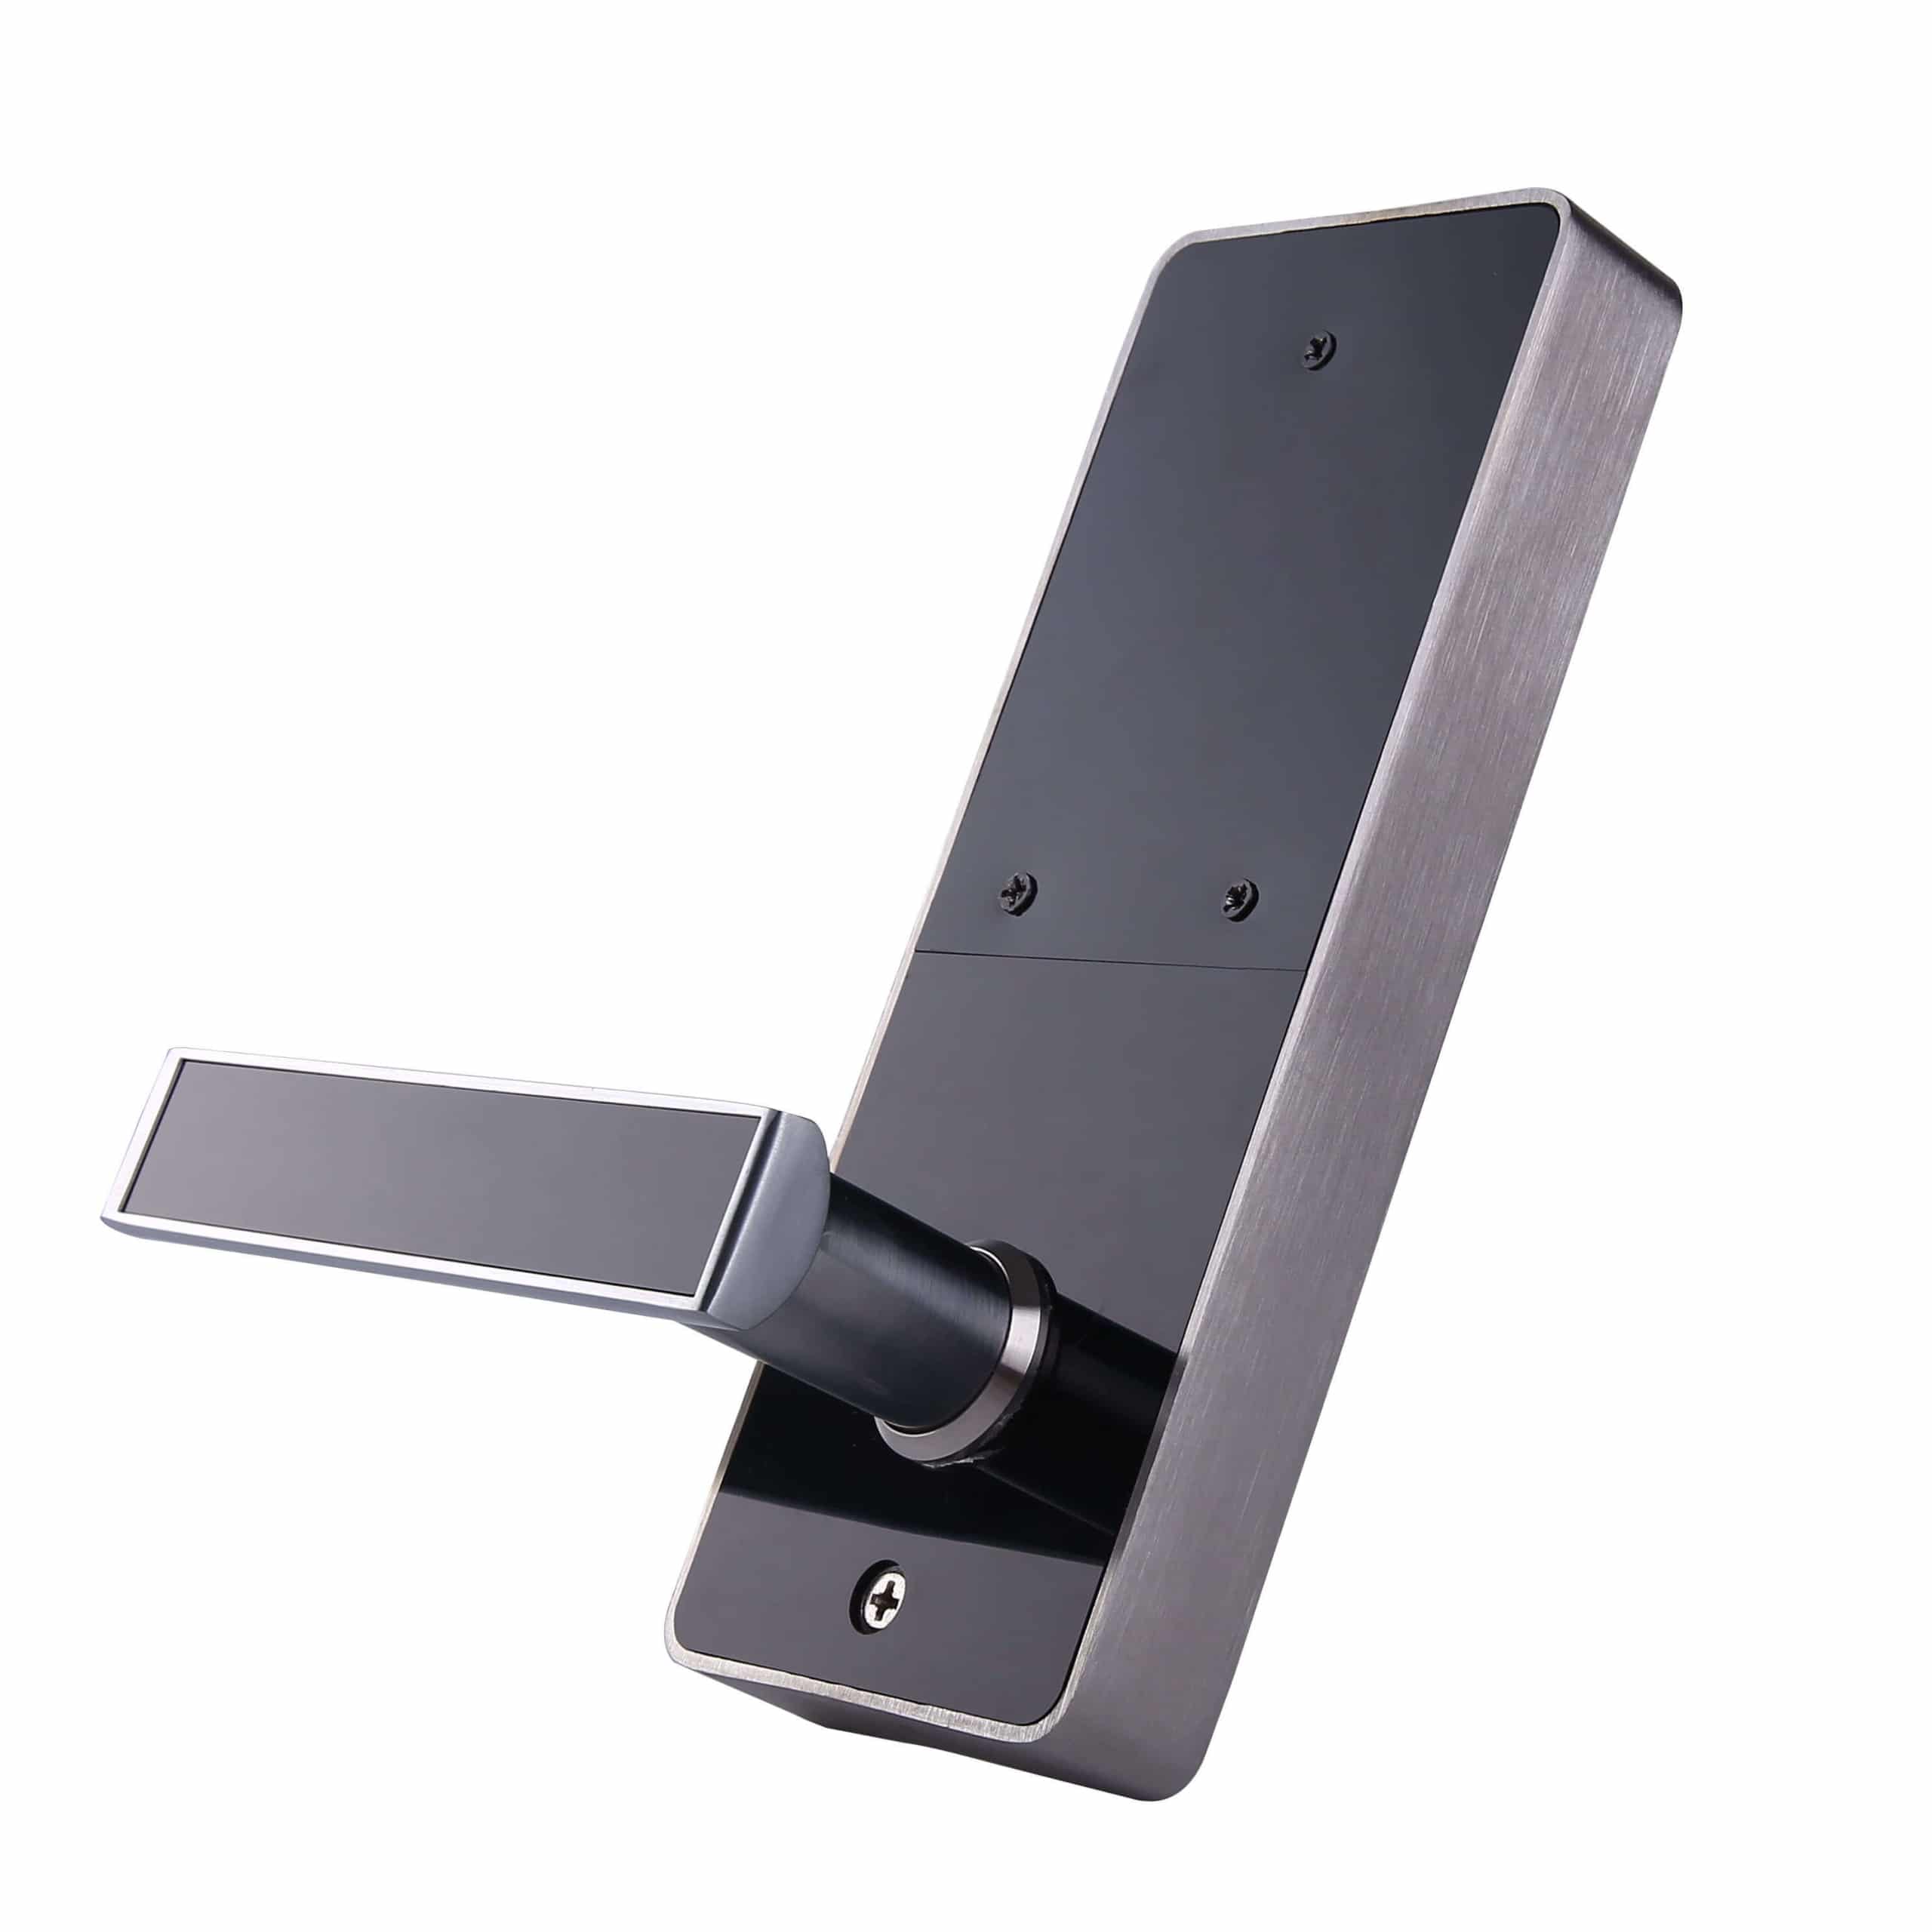 ล็อคประตู Smart RFID Mifare พร้อมรหัสพินและกุญแจเครื่องกล SL-P8822 4